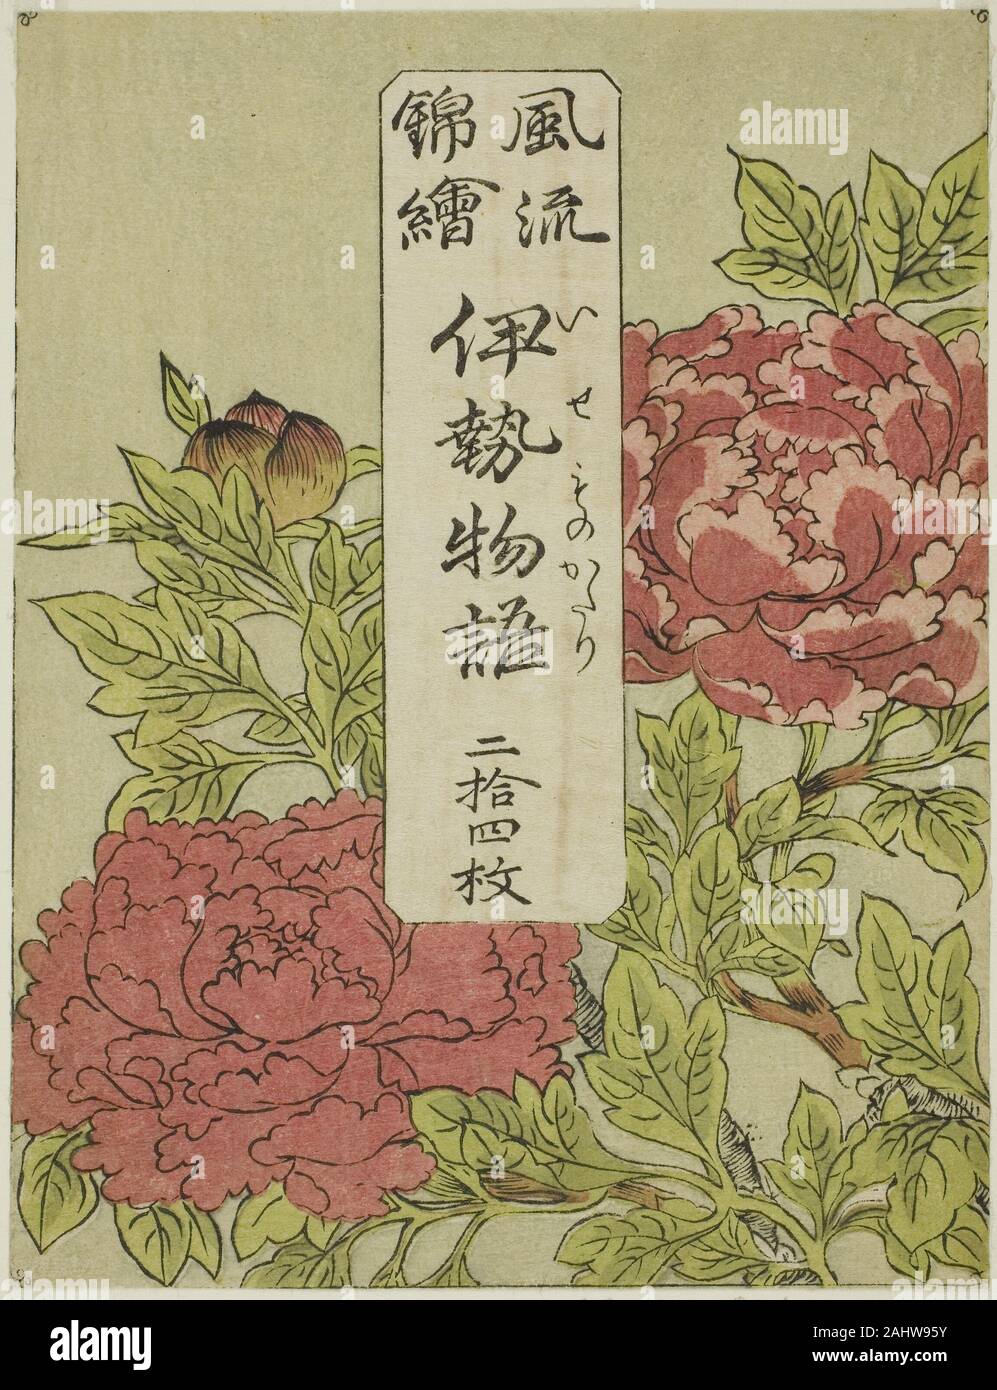 Katsukawa Shunsho. Contenedor para la serie Color-Printed Furyu nishiki-e Ise Monogatori. 1767-1778. El Japón. Grabado en madera de color Foto de stock